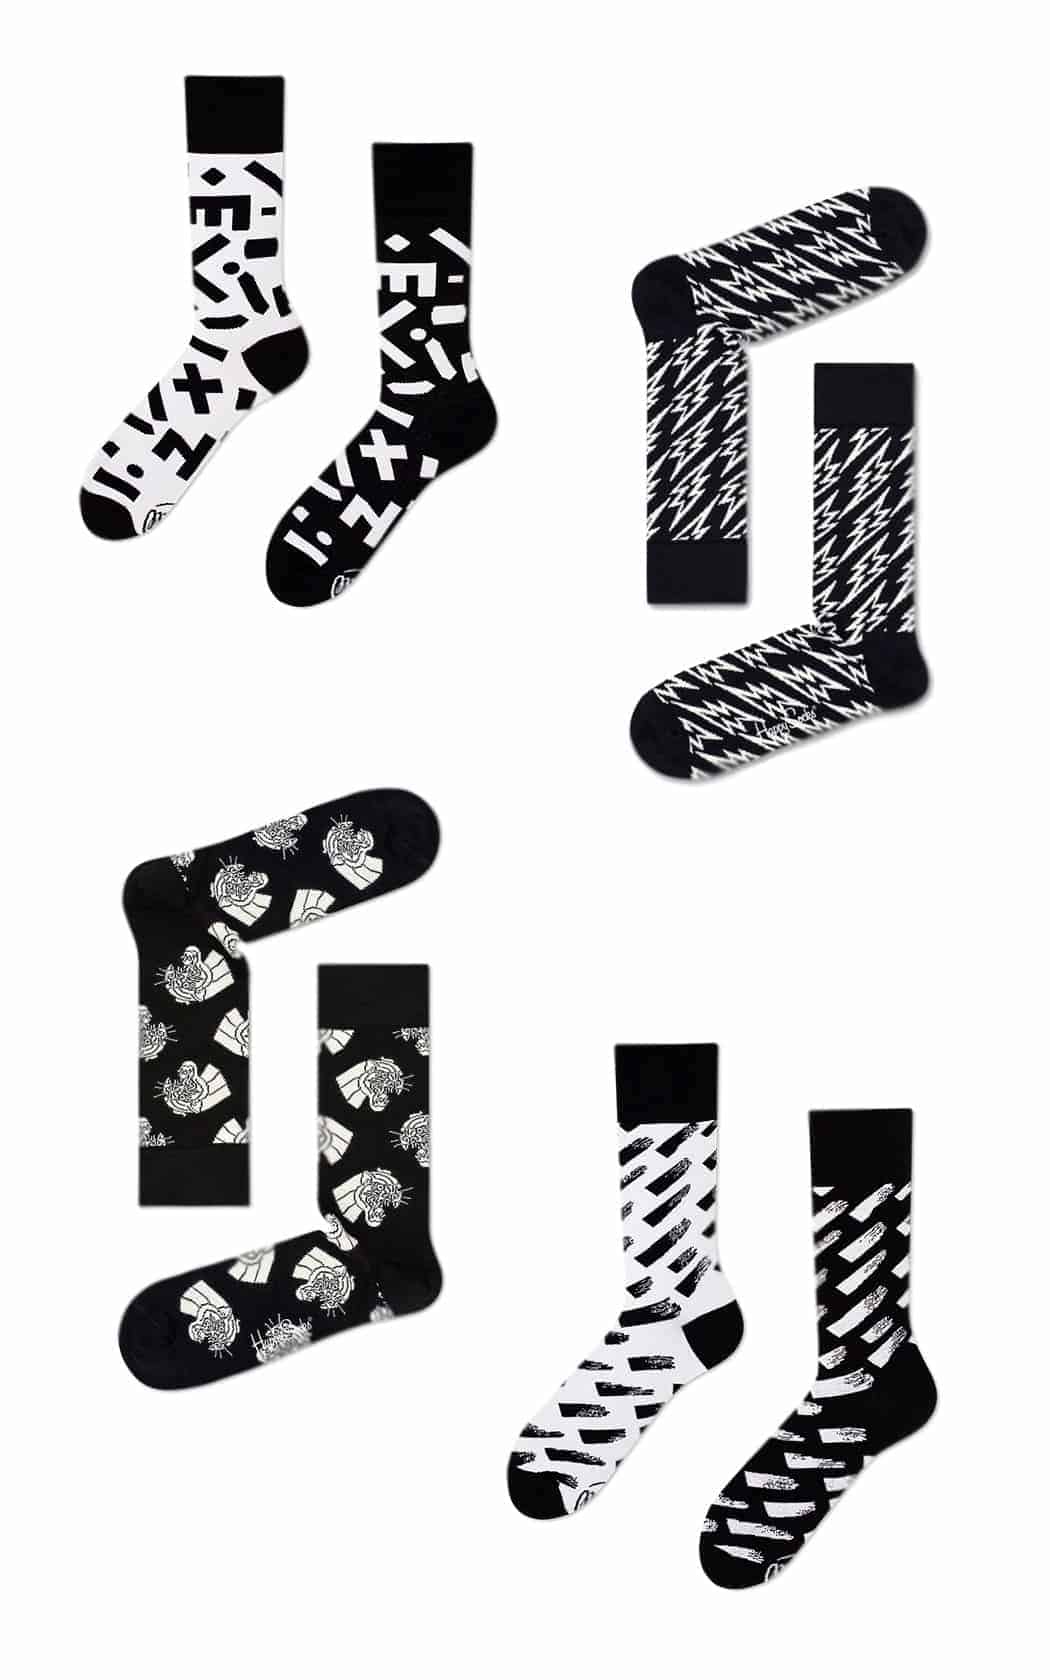 Leuke sokken - 5 x inspiratie voor toffe sokken - Zwart-witte sokken - door Laurens M - via AGMJ.be